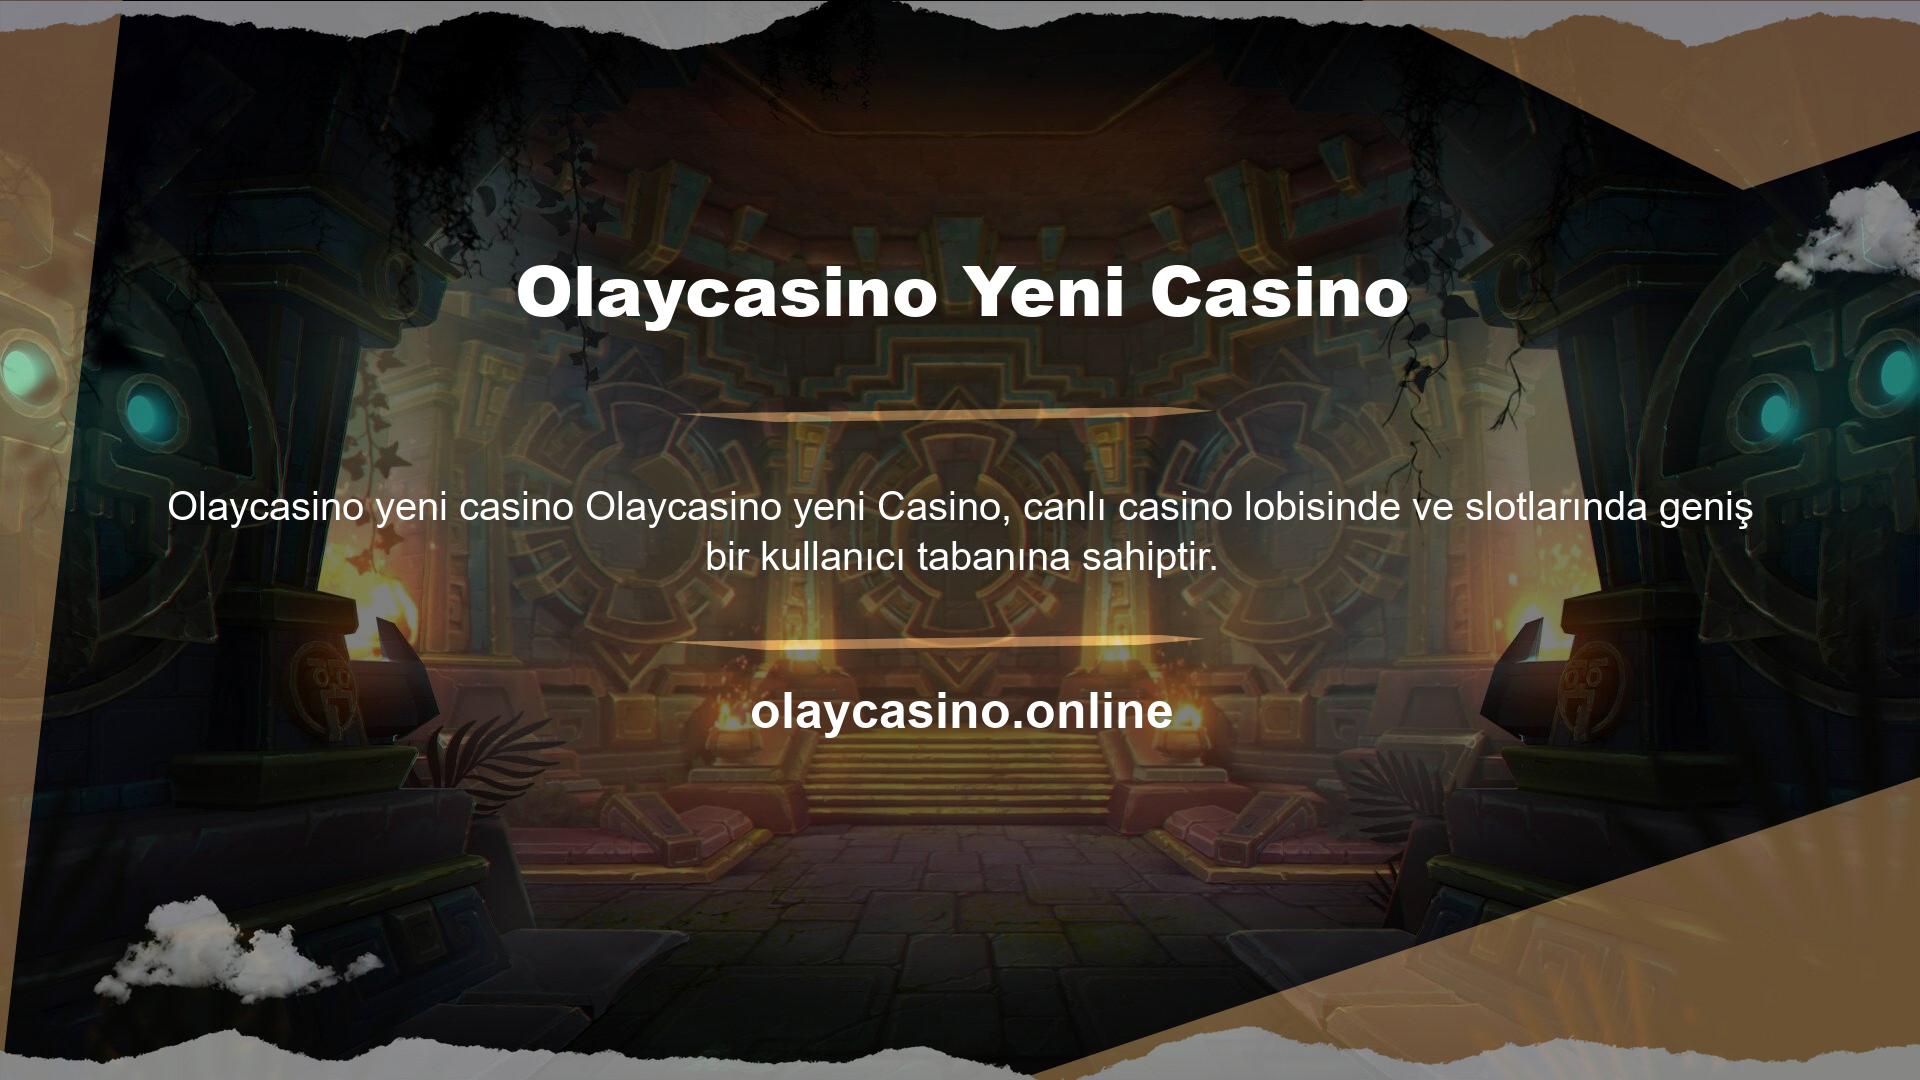 Olaycasino Yeni Casino